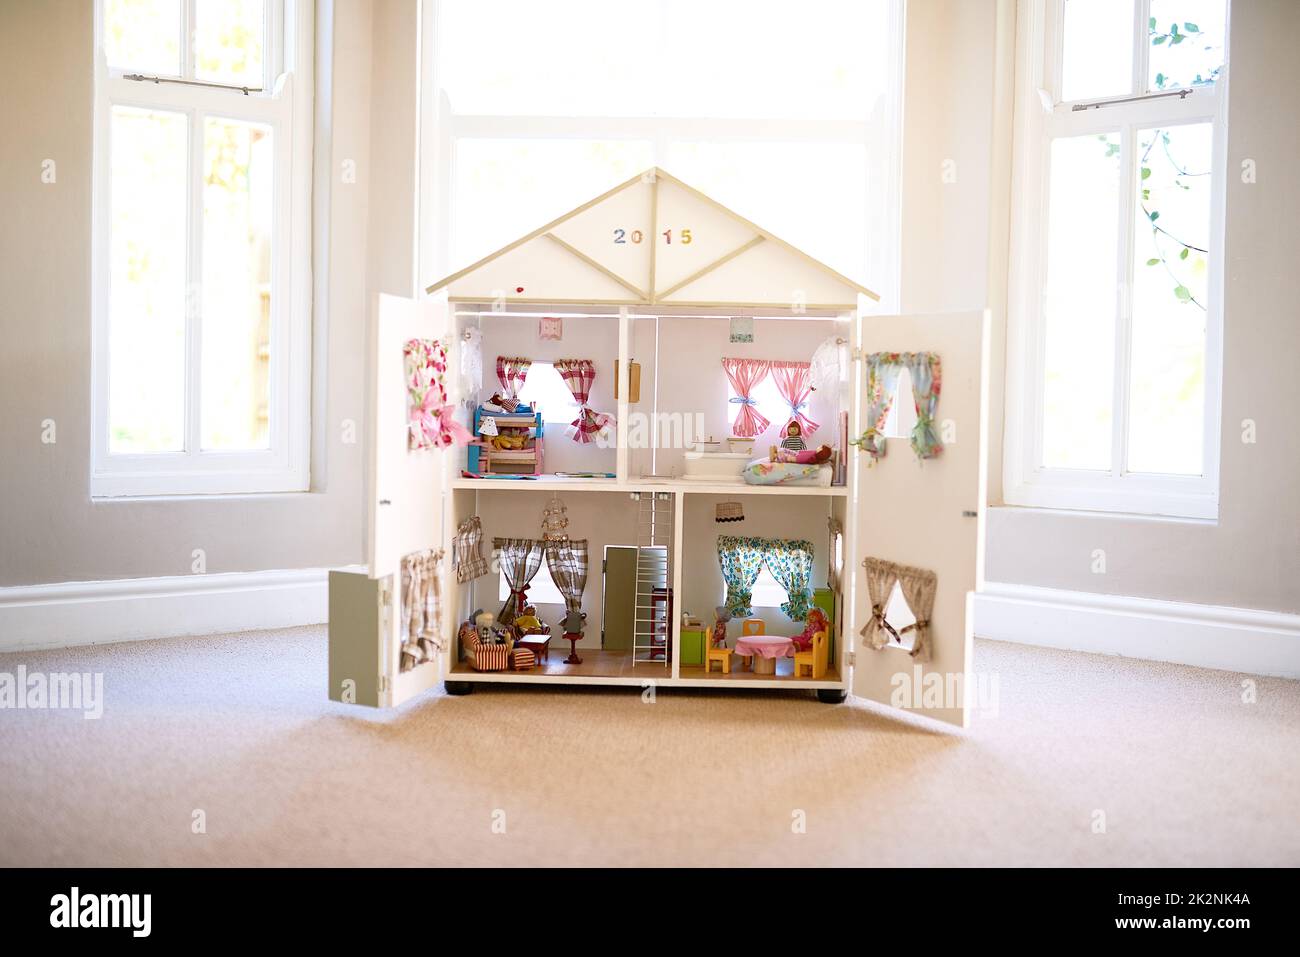 Les poupées à la maison. Photo d'une maison de poupées dans une pièce vide. Banque D'Images